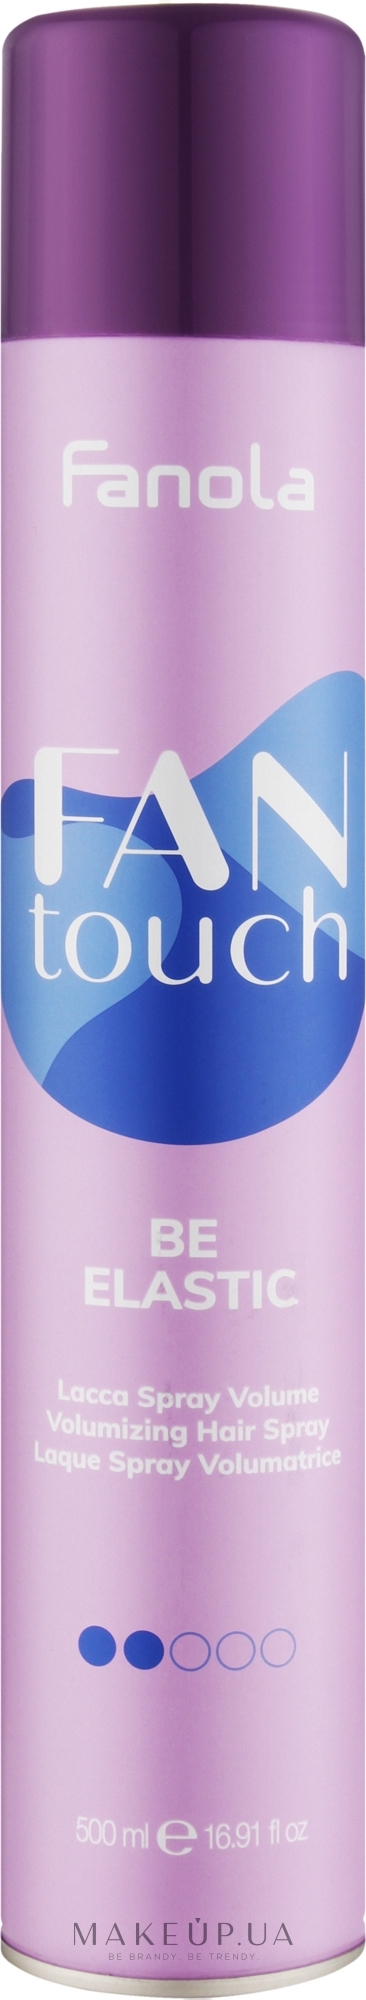 Лак для обьема волос - Fanola Fantouch Be Elastic Volumizing Hair Spray — фото 500ml